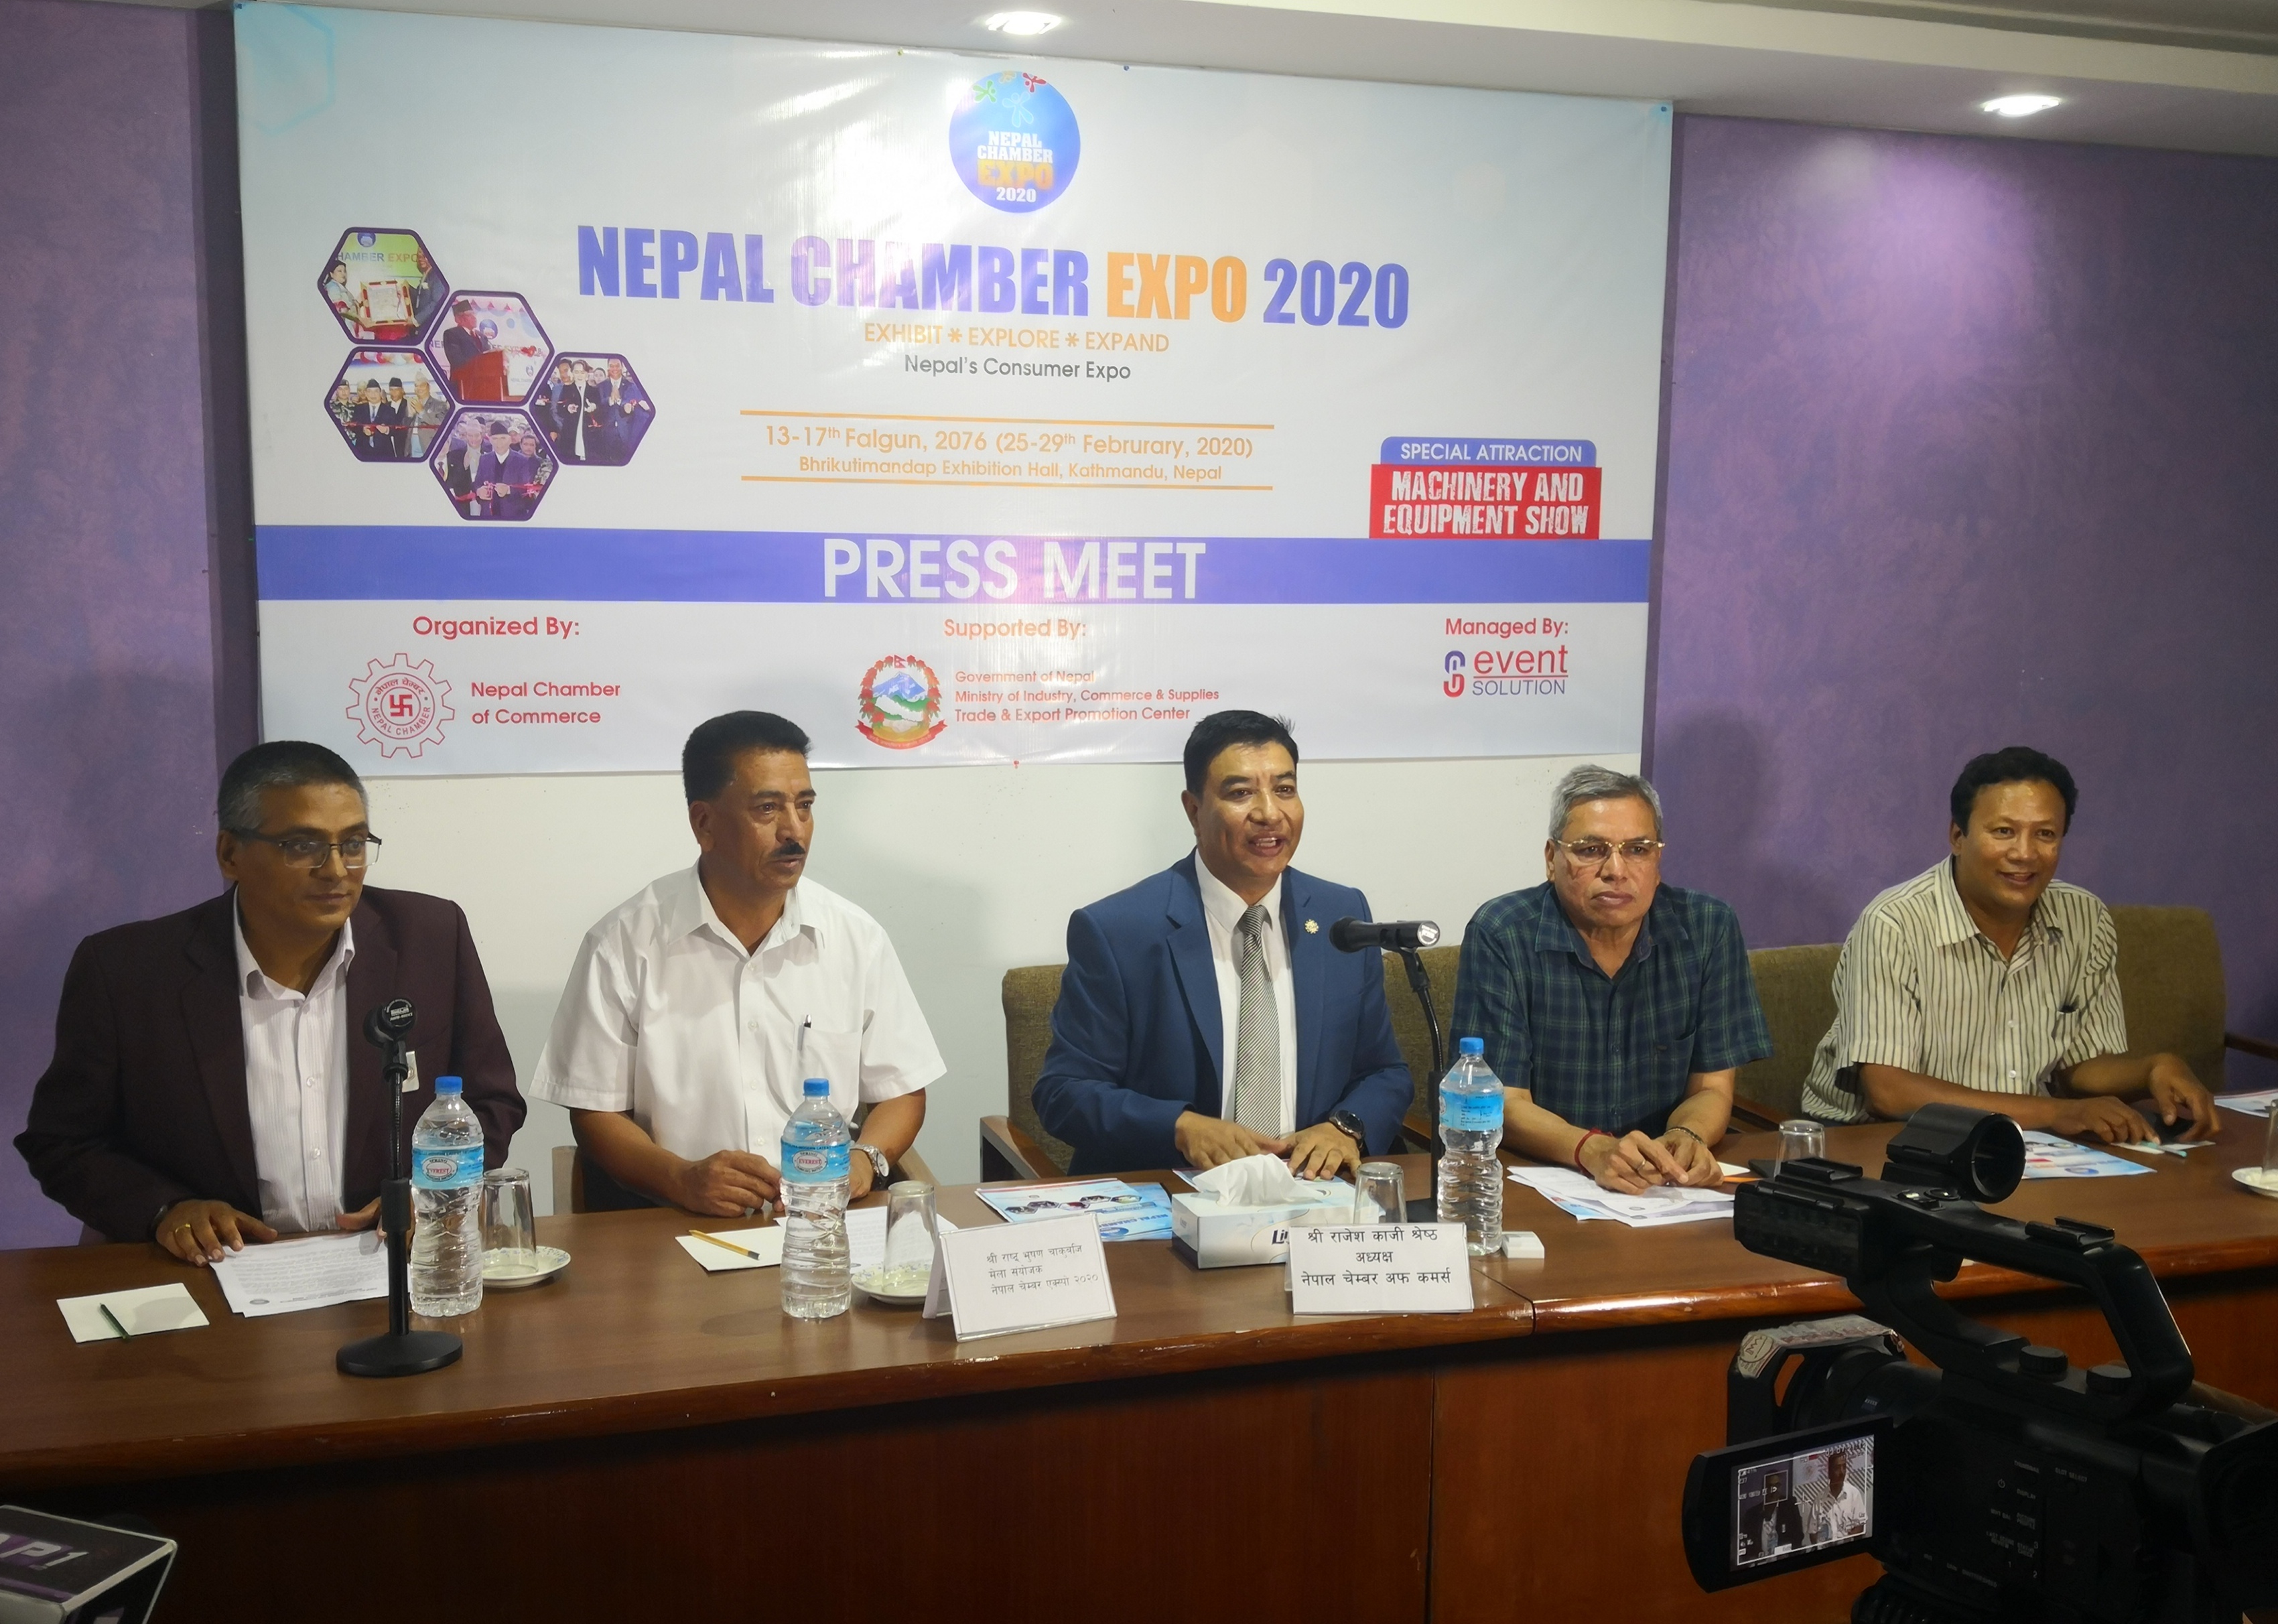 पाँचौं नेपाल चेम्बर एक्स्पो २०२० आयोजना गरिने